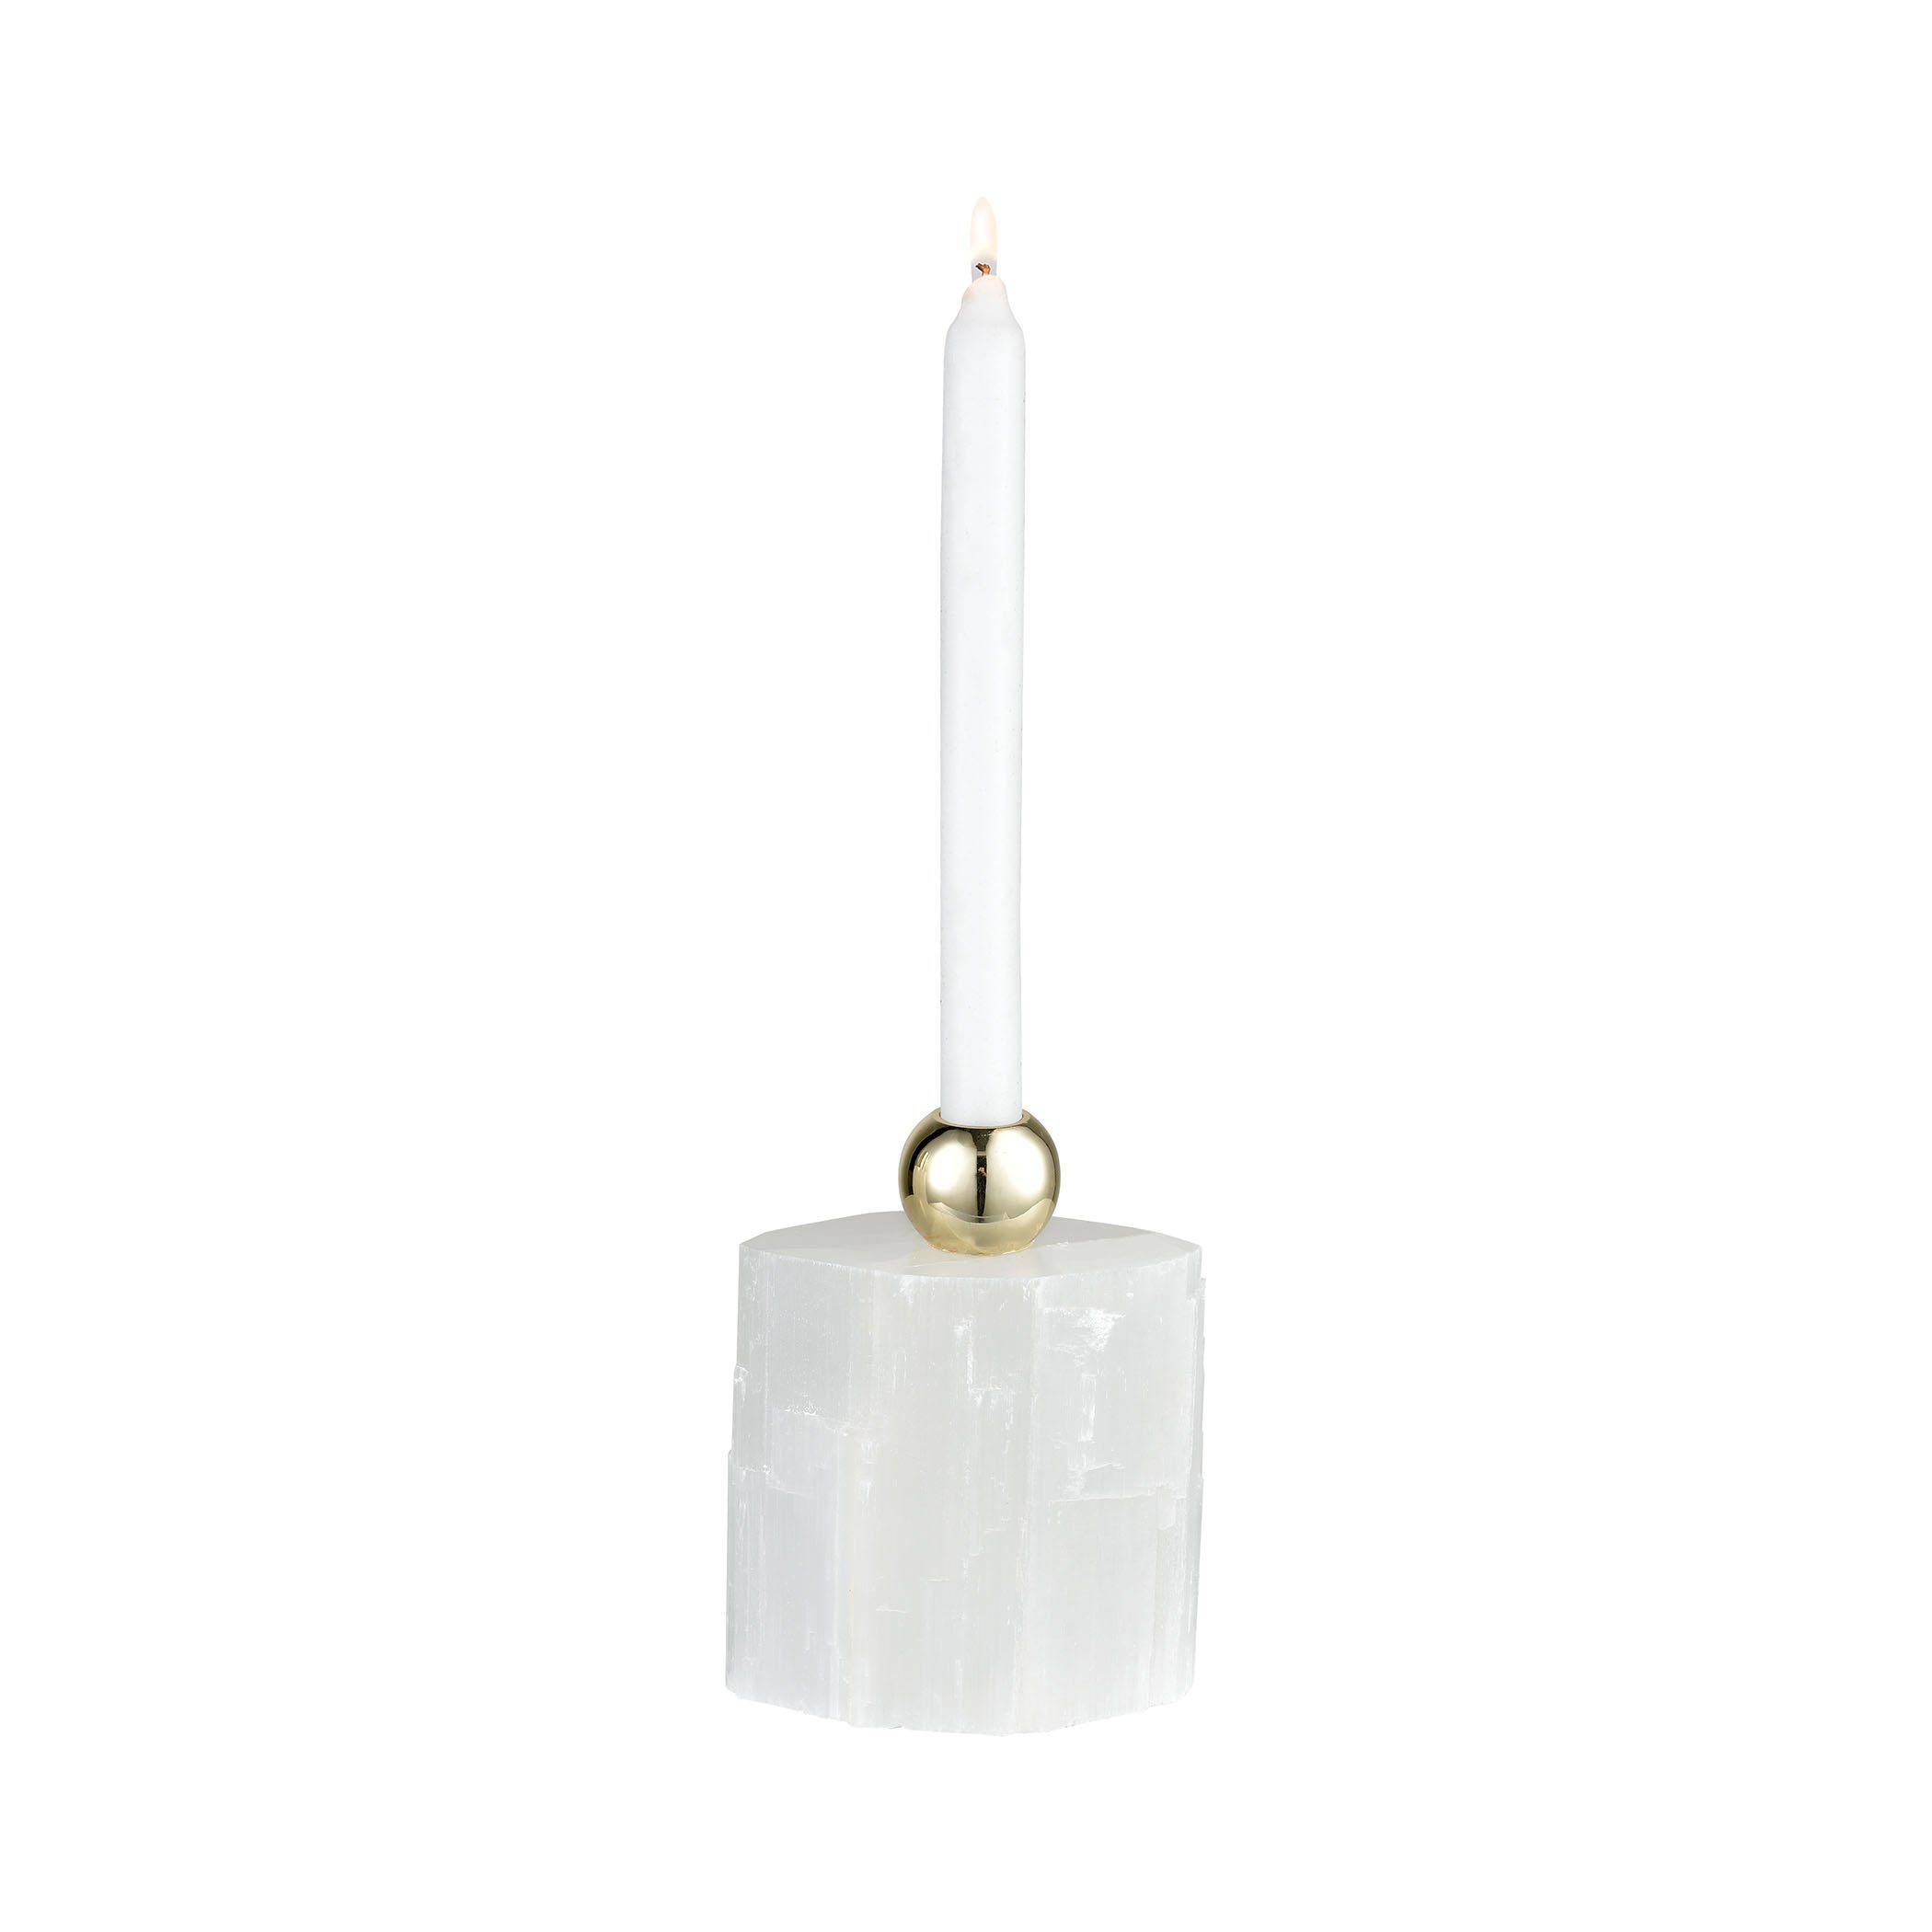 Bienvenu Decorative Candlestick (Off) Accessories Dimond Home 